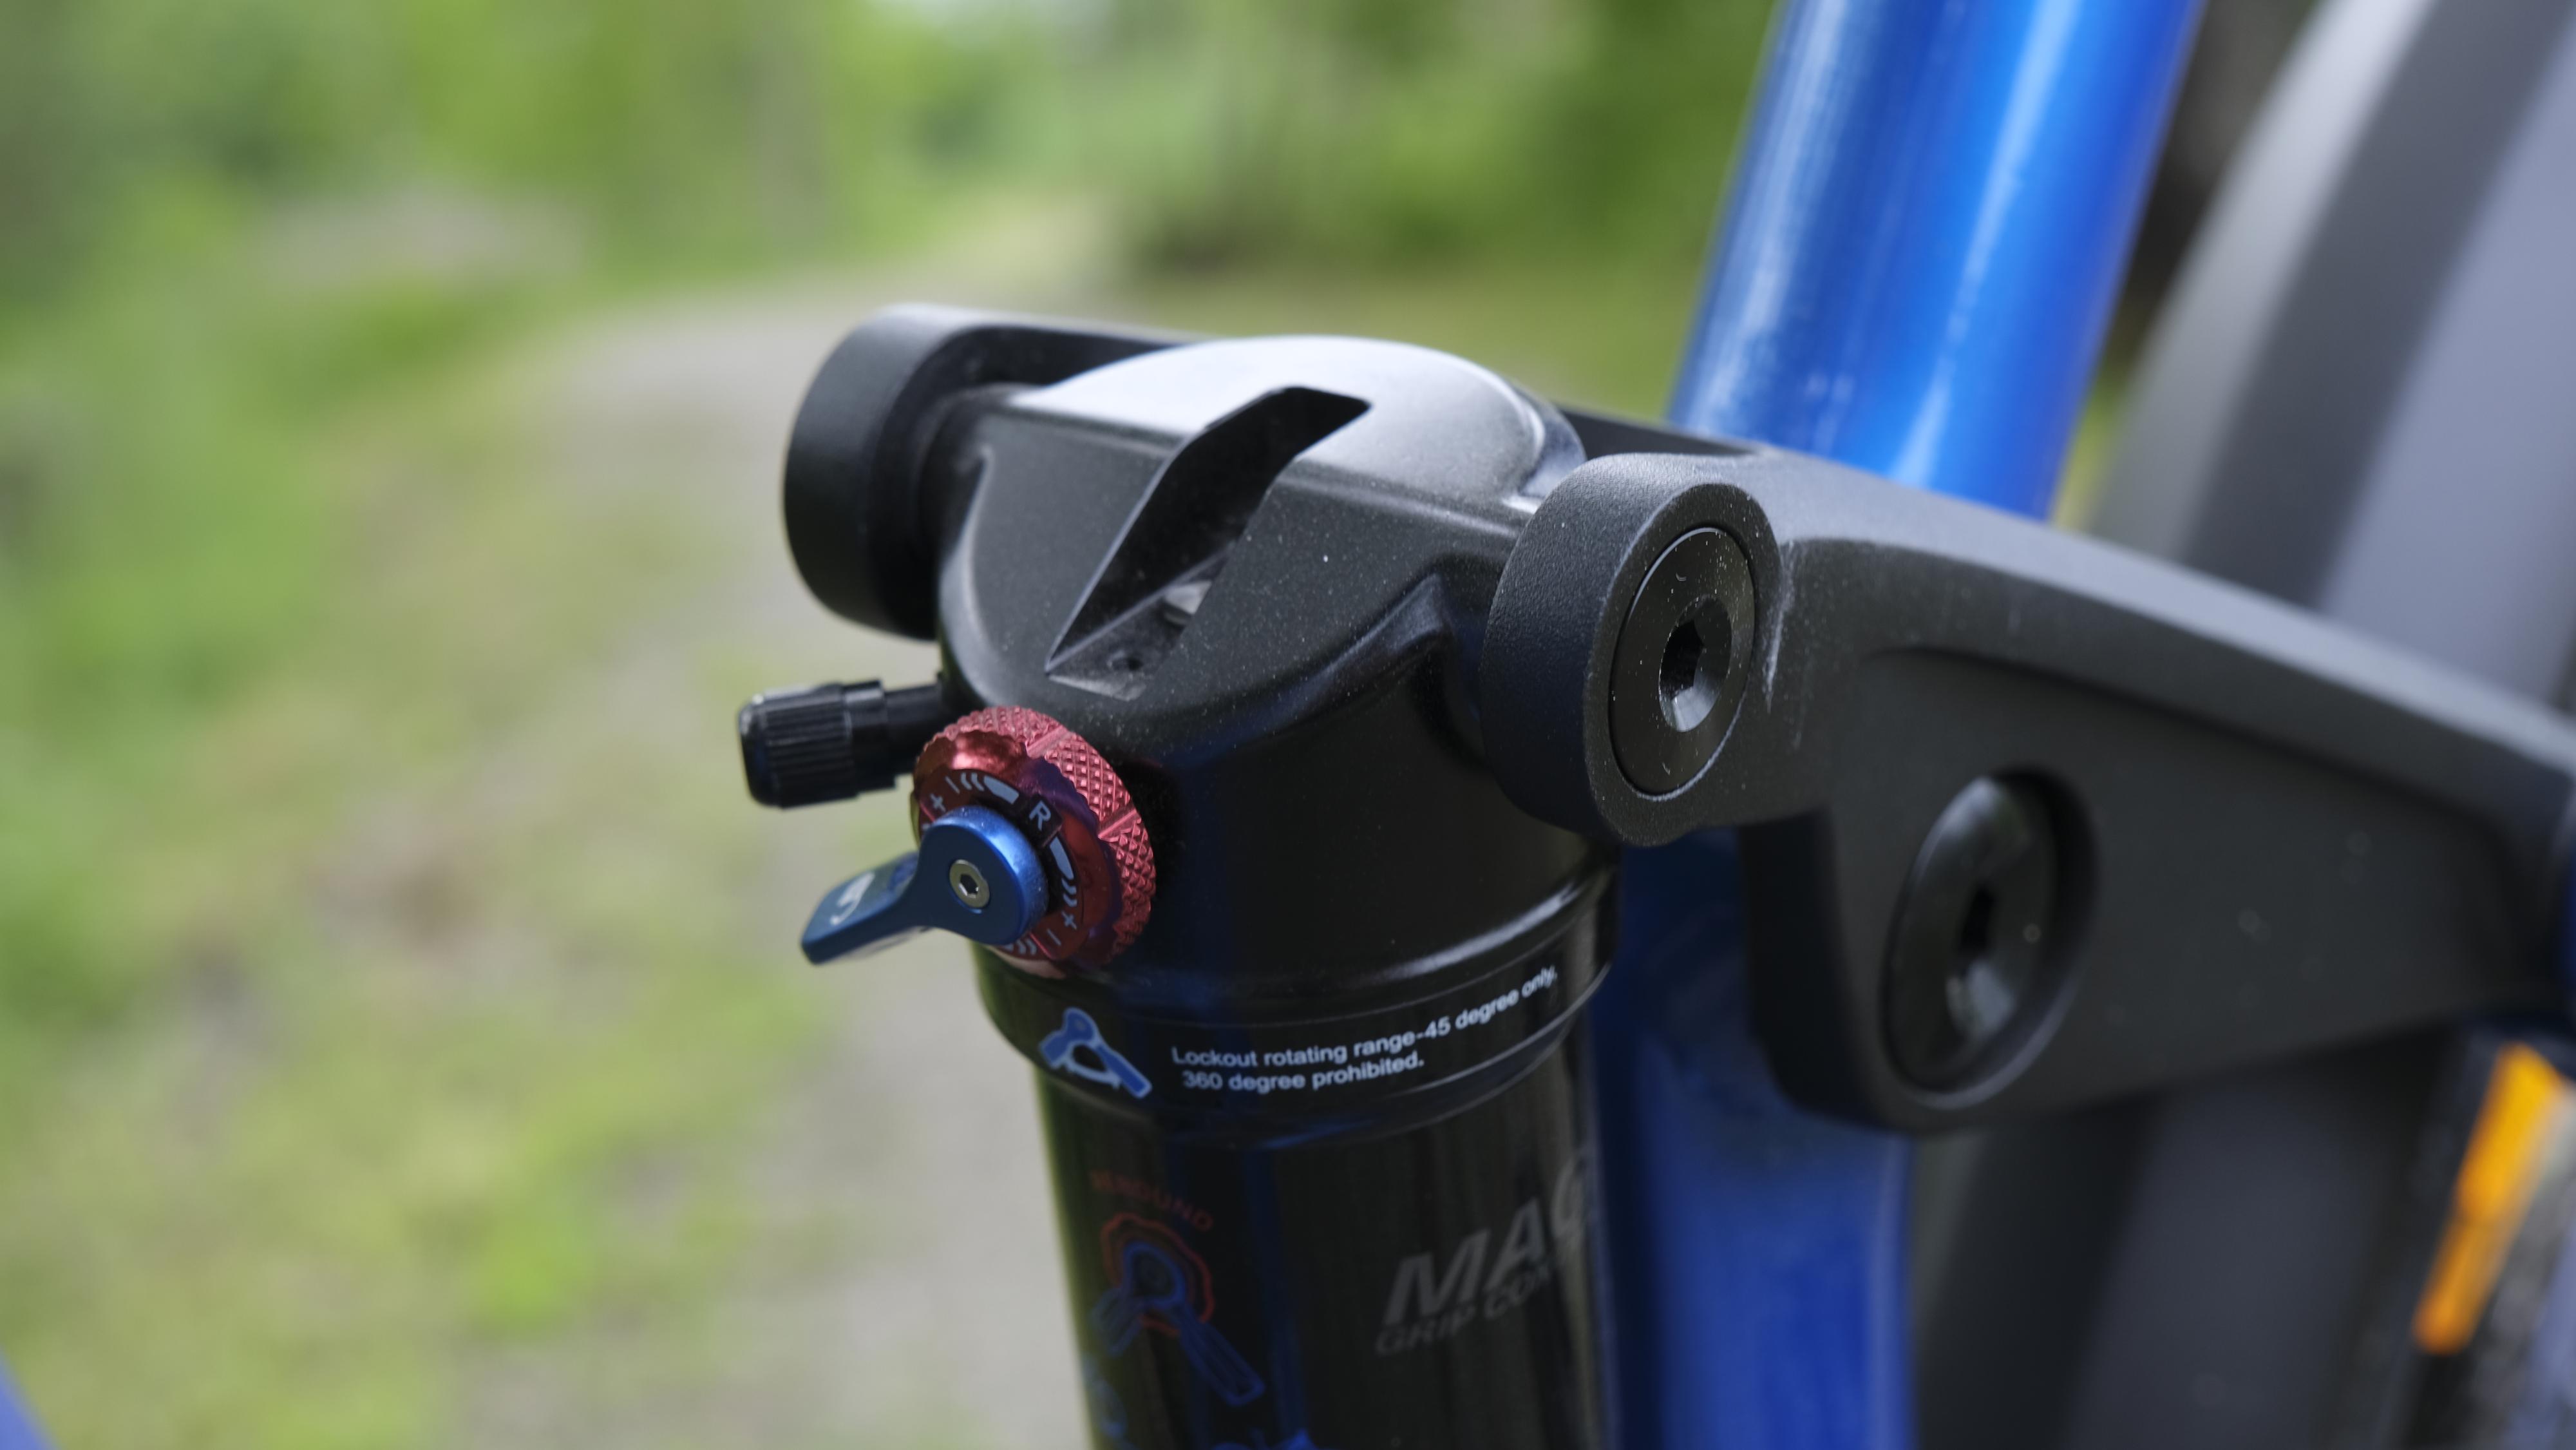 Bakdemperen reguleres med luft, og har i tillegg lockout om du vil ha en stiv bakende på sykkelen. 